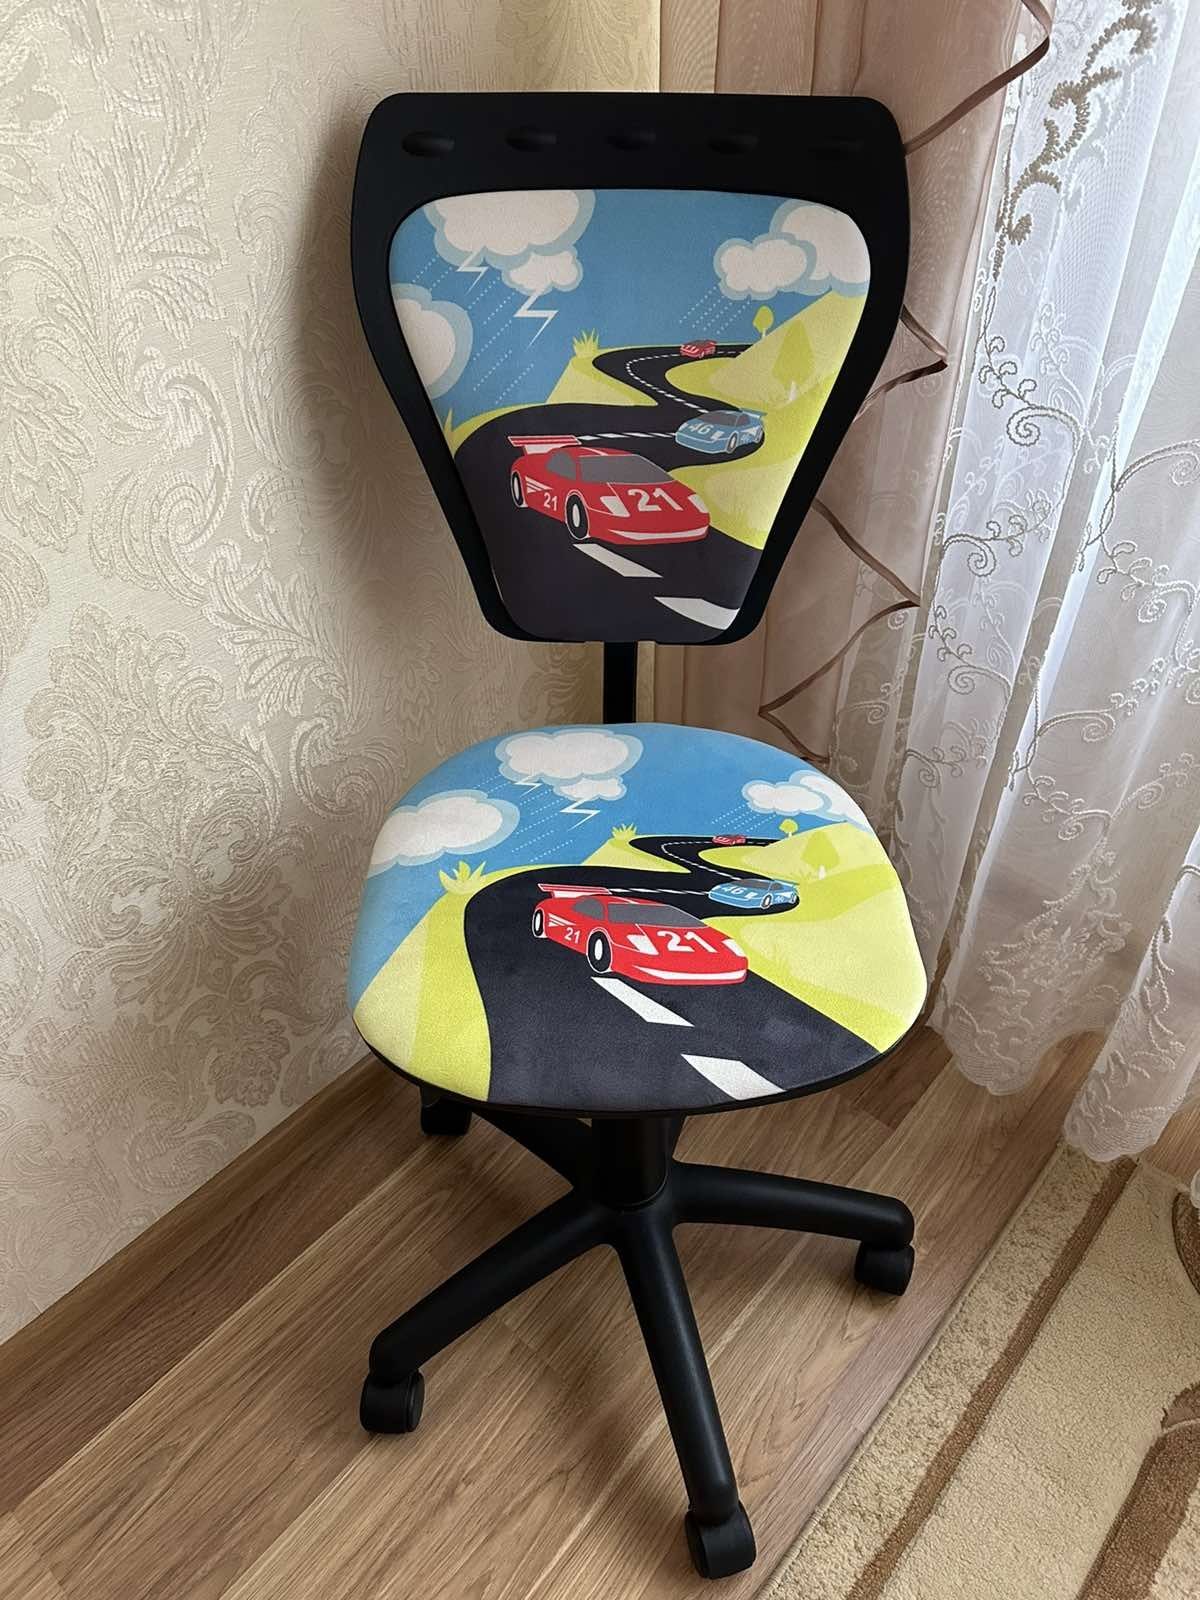 Продам компьютерные кресла для мальчика и девочки.